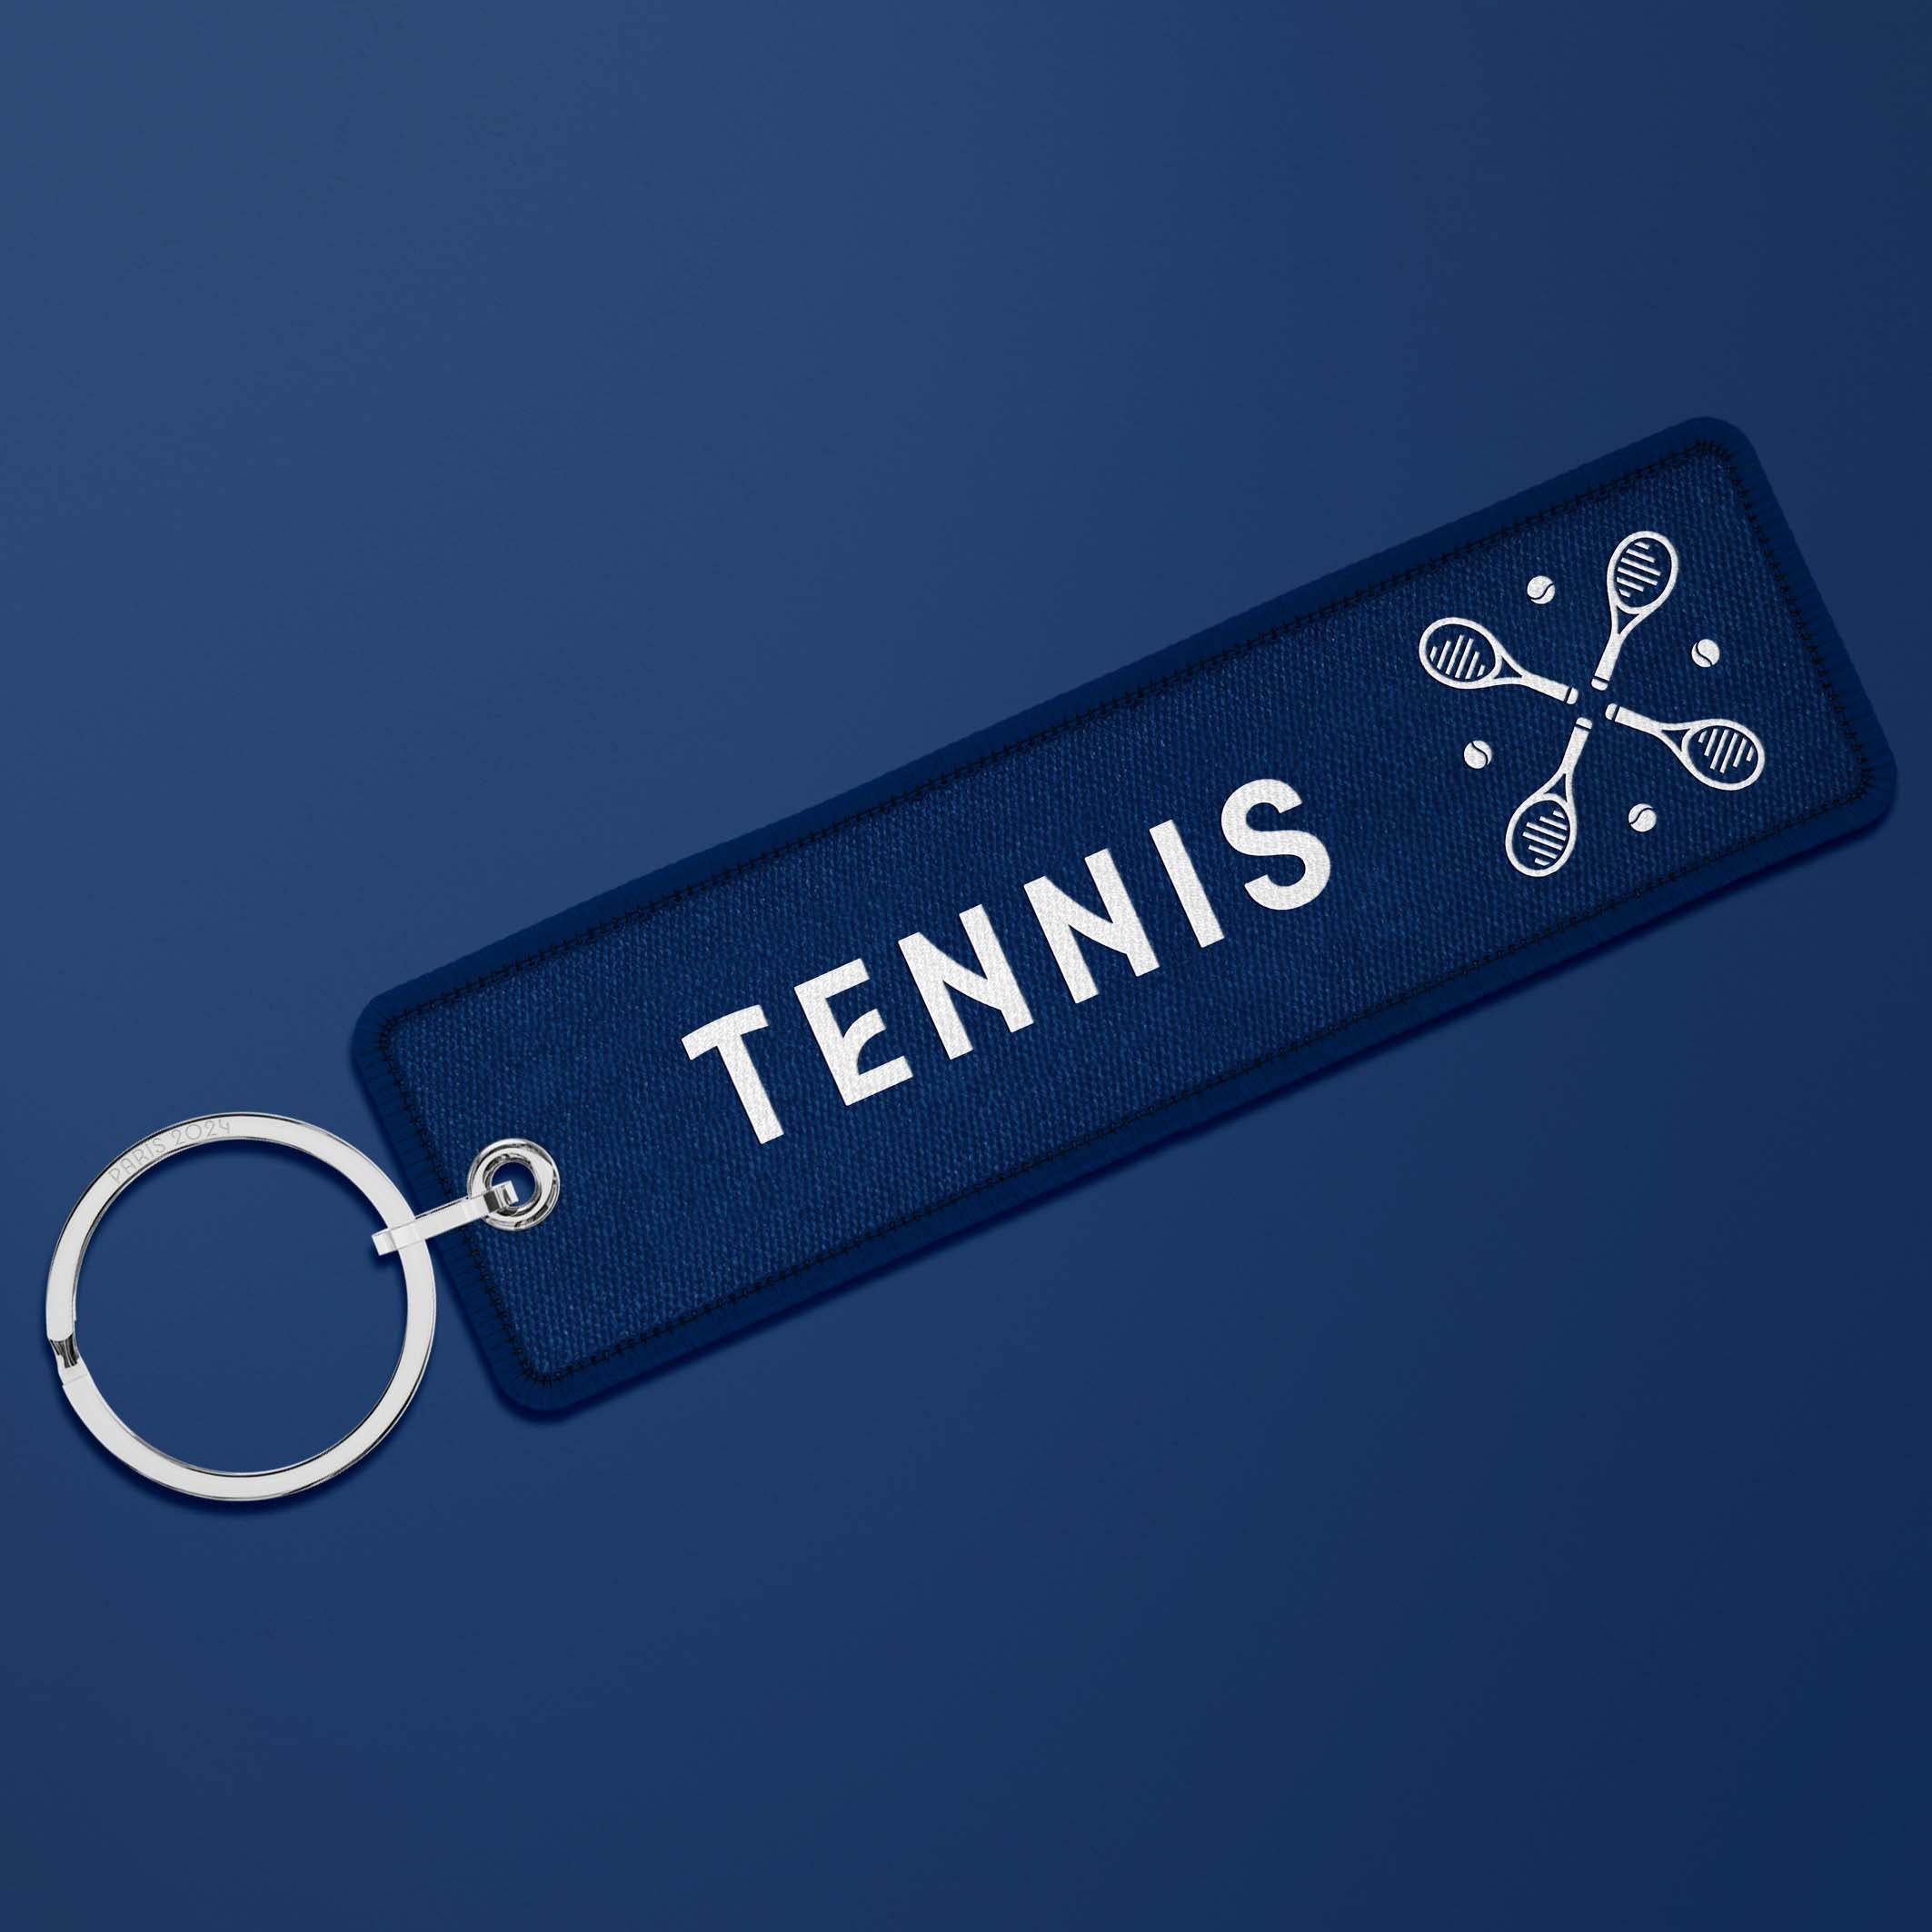 Porte-clés flamme Paris 2024 French blue - Tennis